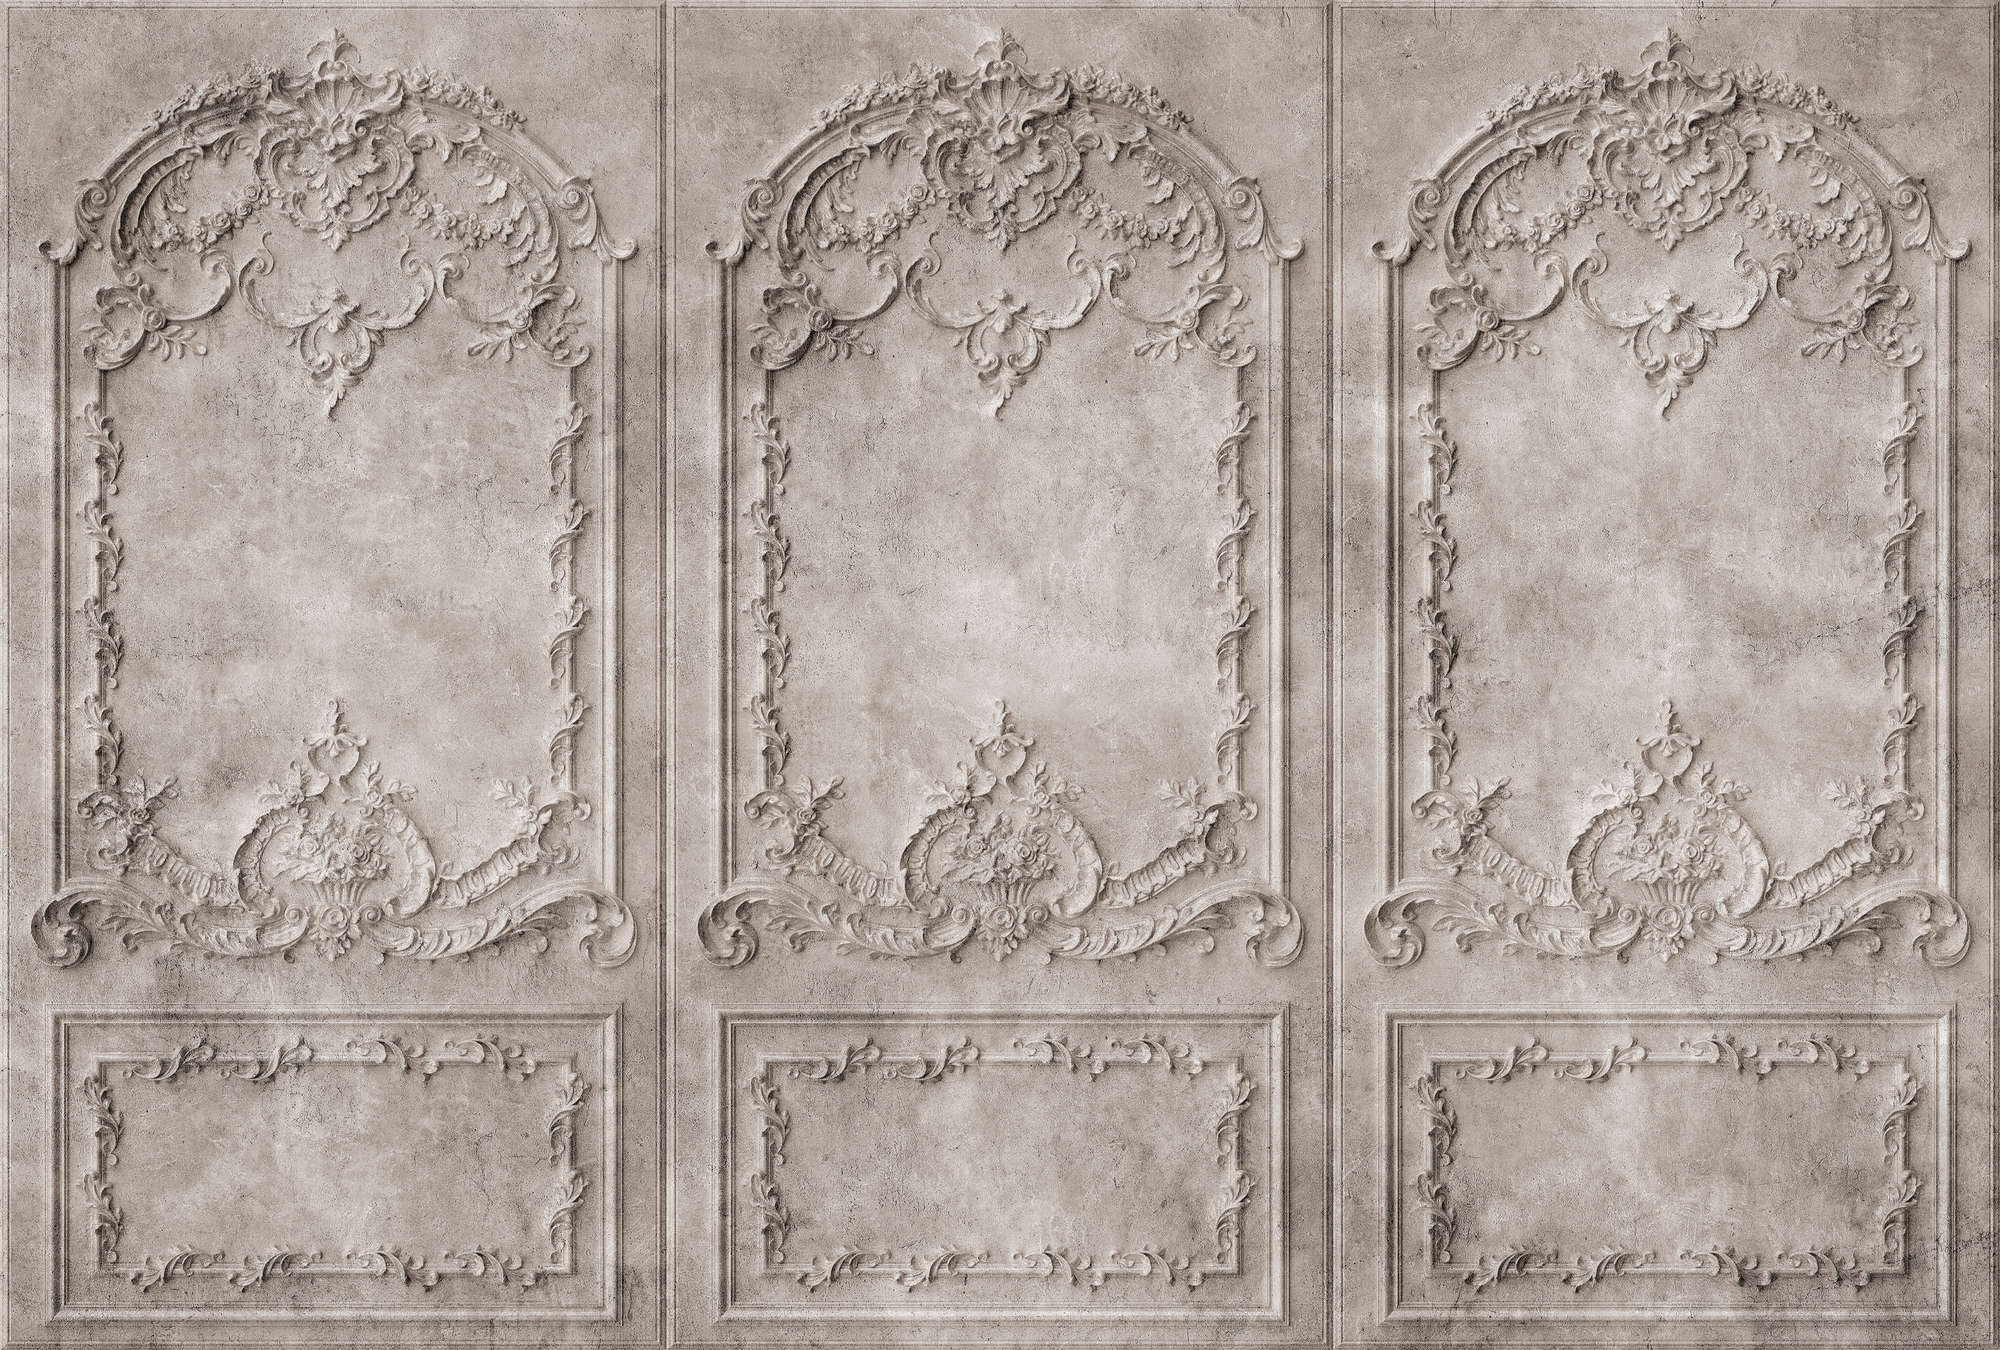             Versailles 1 - Carta da parati in legno grigio-marrone in stile barocco
        